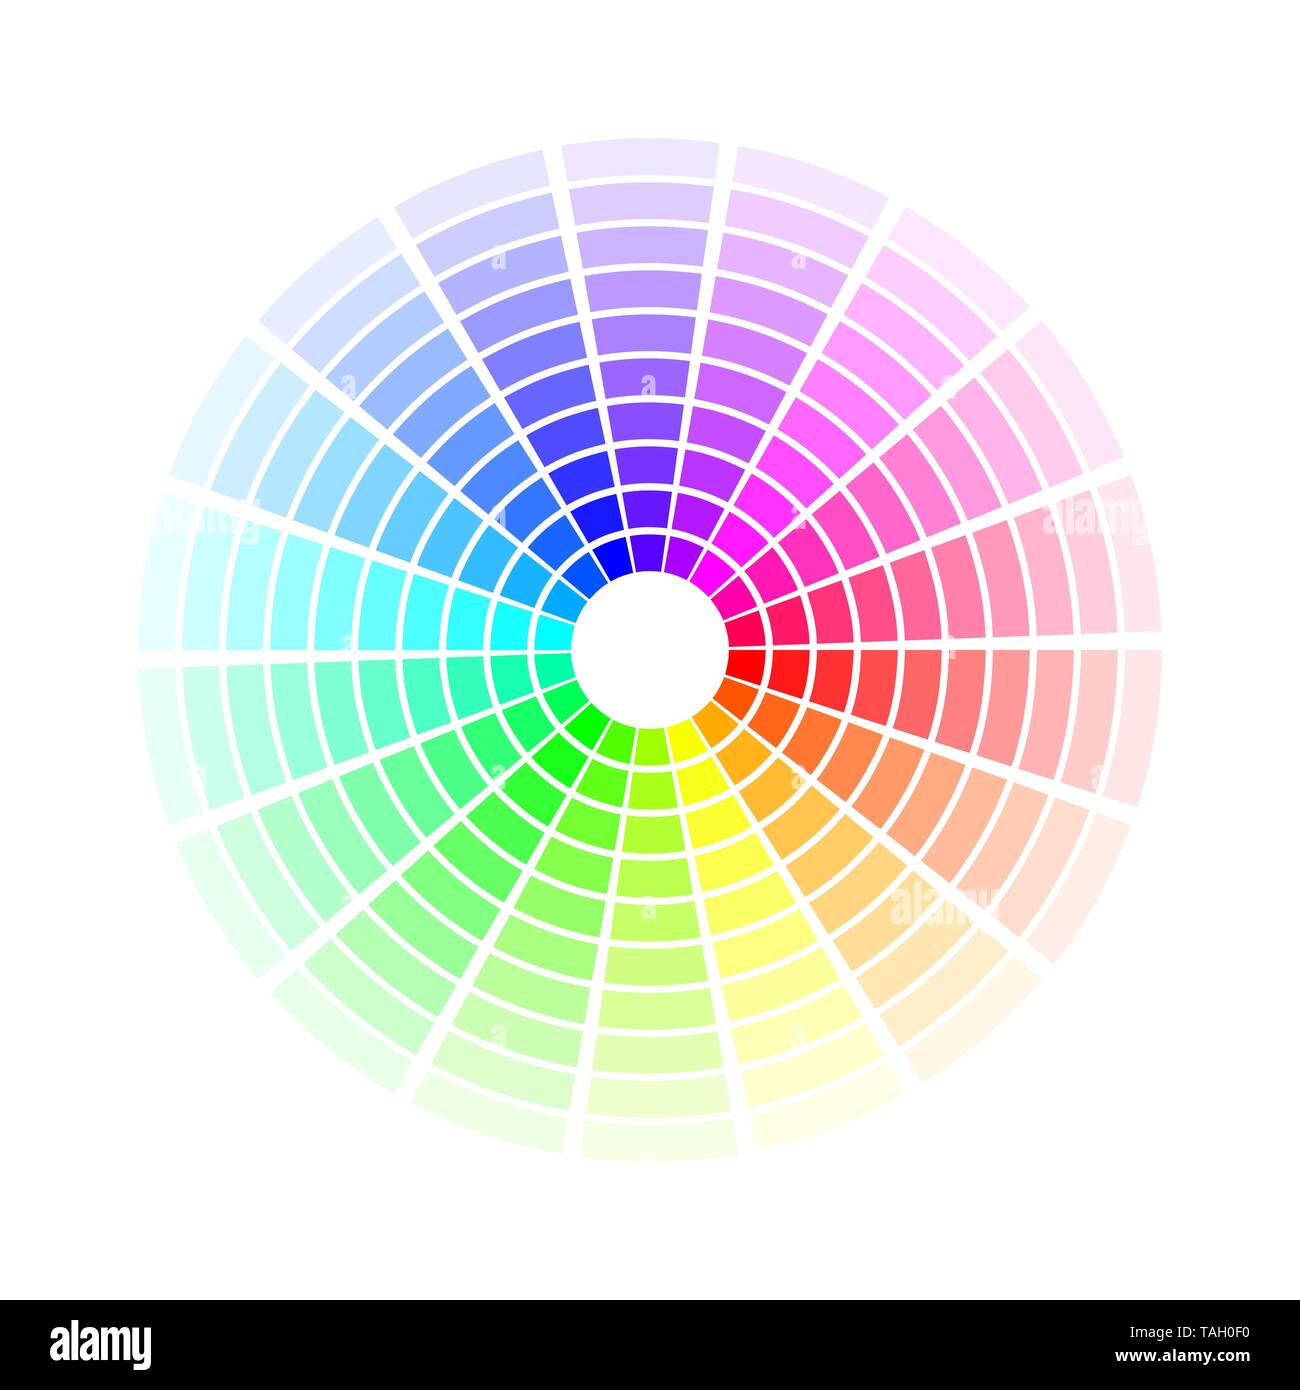 Cerchio dei colori. Luminose colorate sfumature arcobaleno. Illustrazione di vettore isolato su sfondo bianco Illustrazione Vettoriale